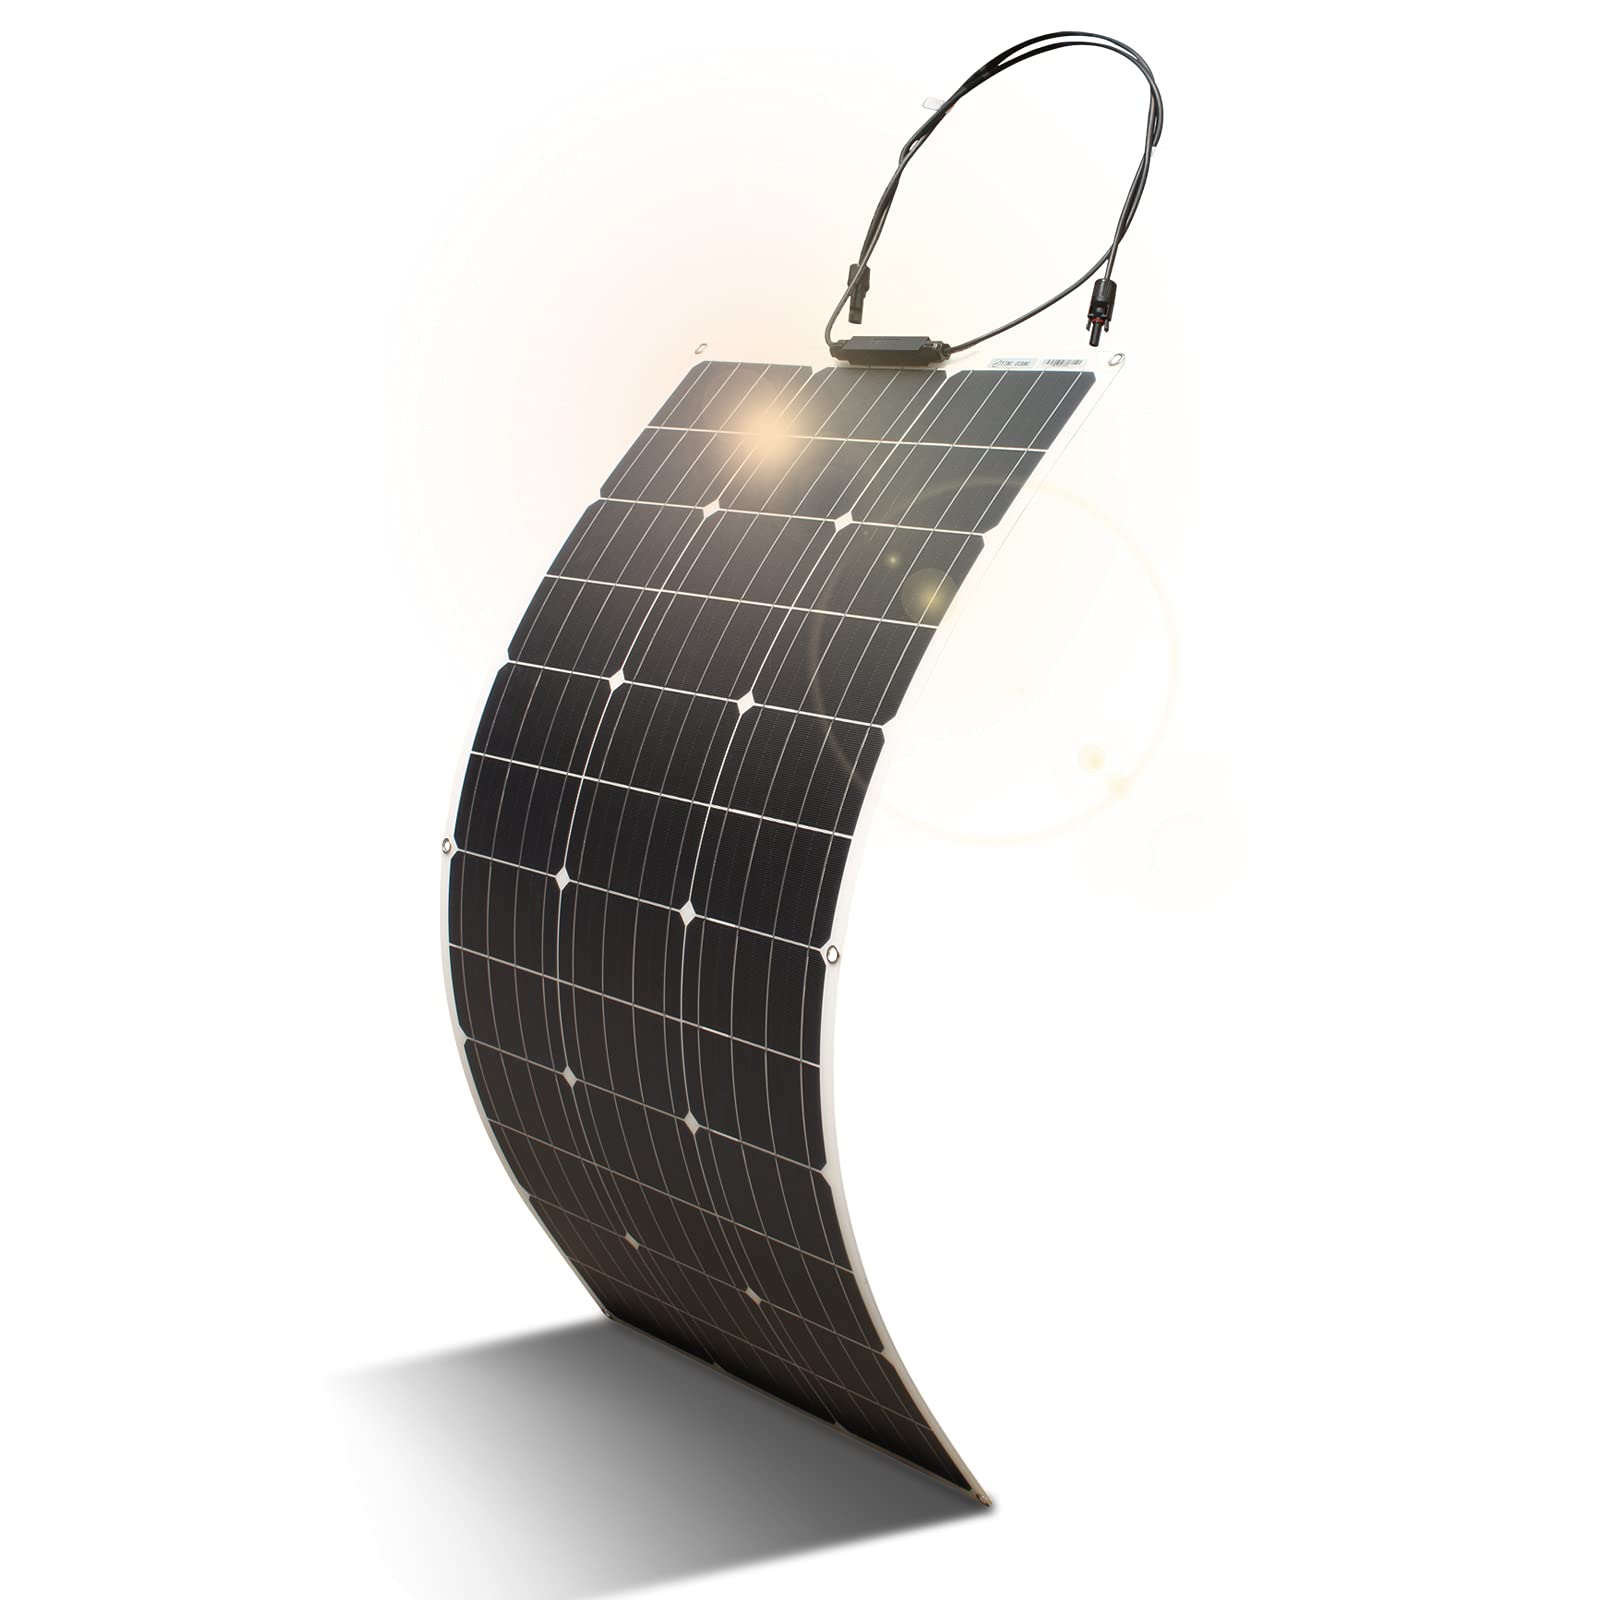 100W Flexible SolarPanel, Tragbare Solarpanels, 18V hocheffiziente Solarmodule sind für Outdoor Solargeneratoren mobile Lithium Batterien, Wohnmobil Camping Yacht Boot Outdoor Abenteuer